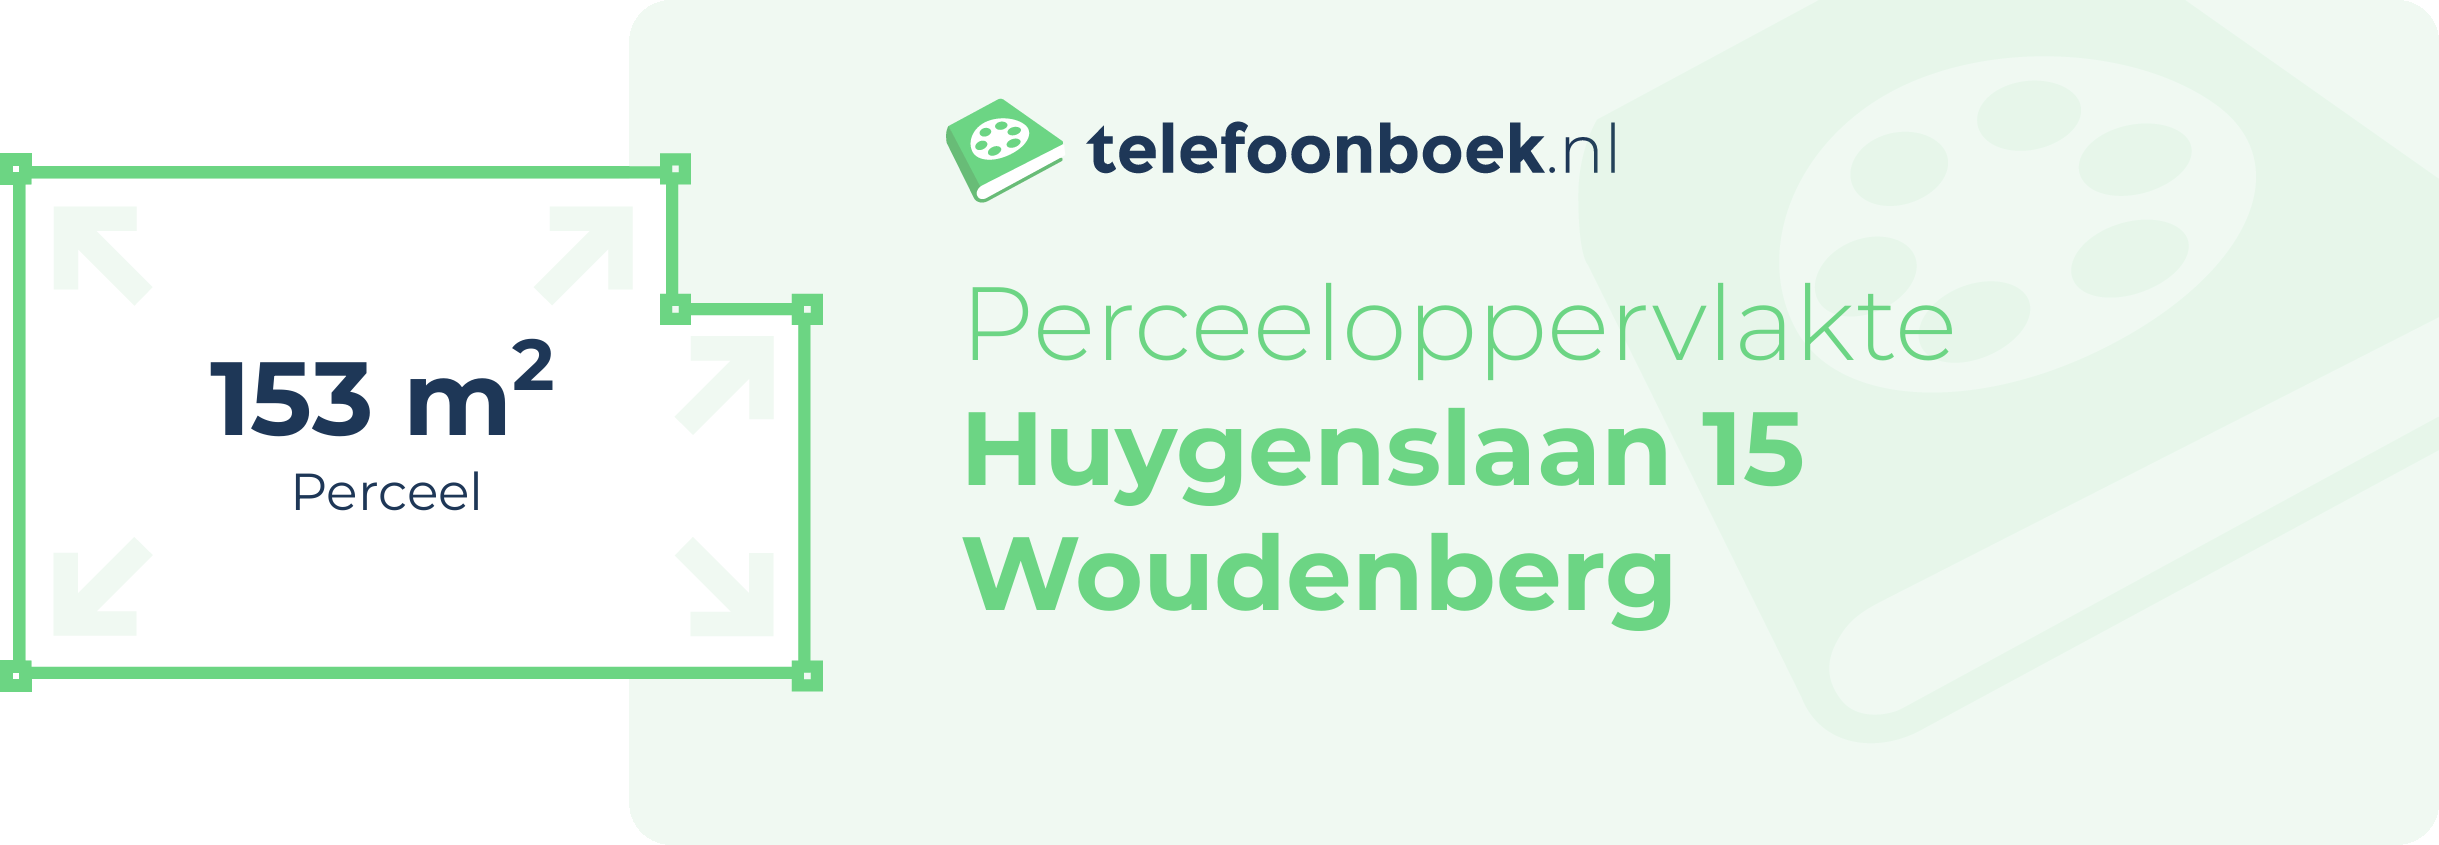 Perceeloppervlakte Huygenslaan 15 Woudenberg